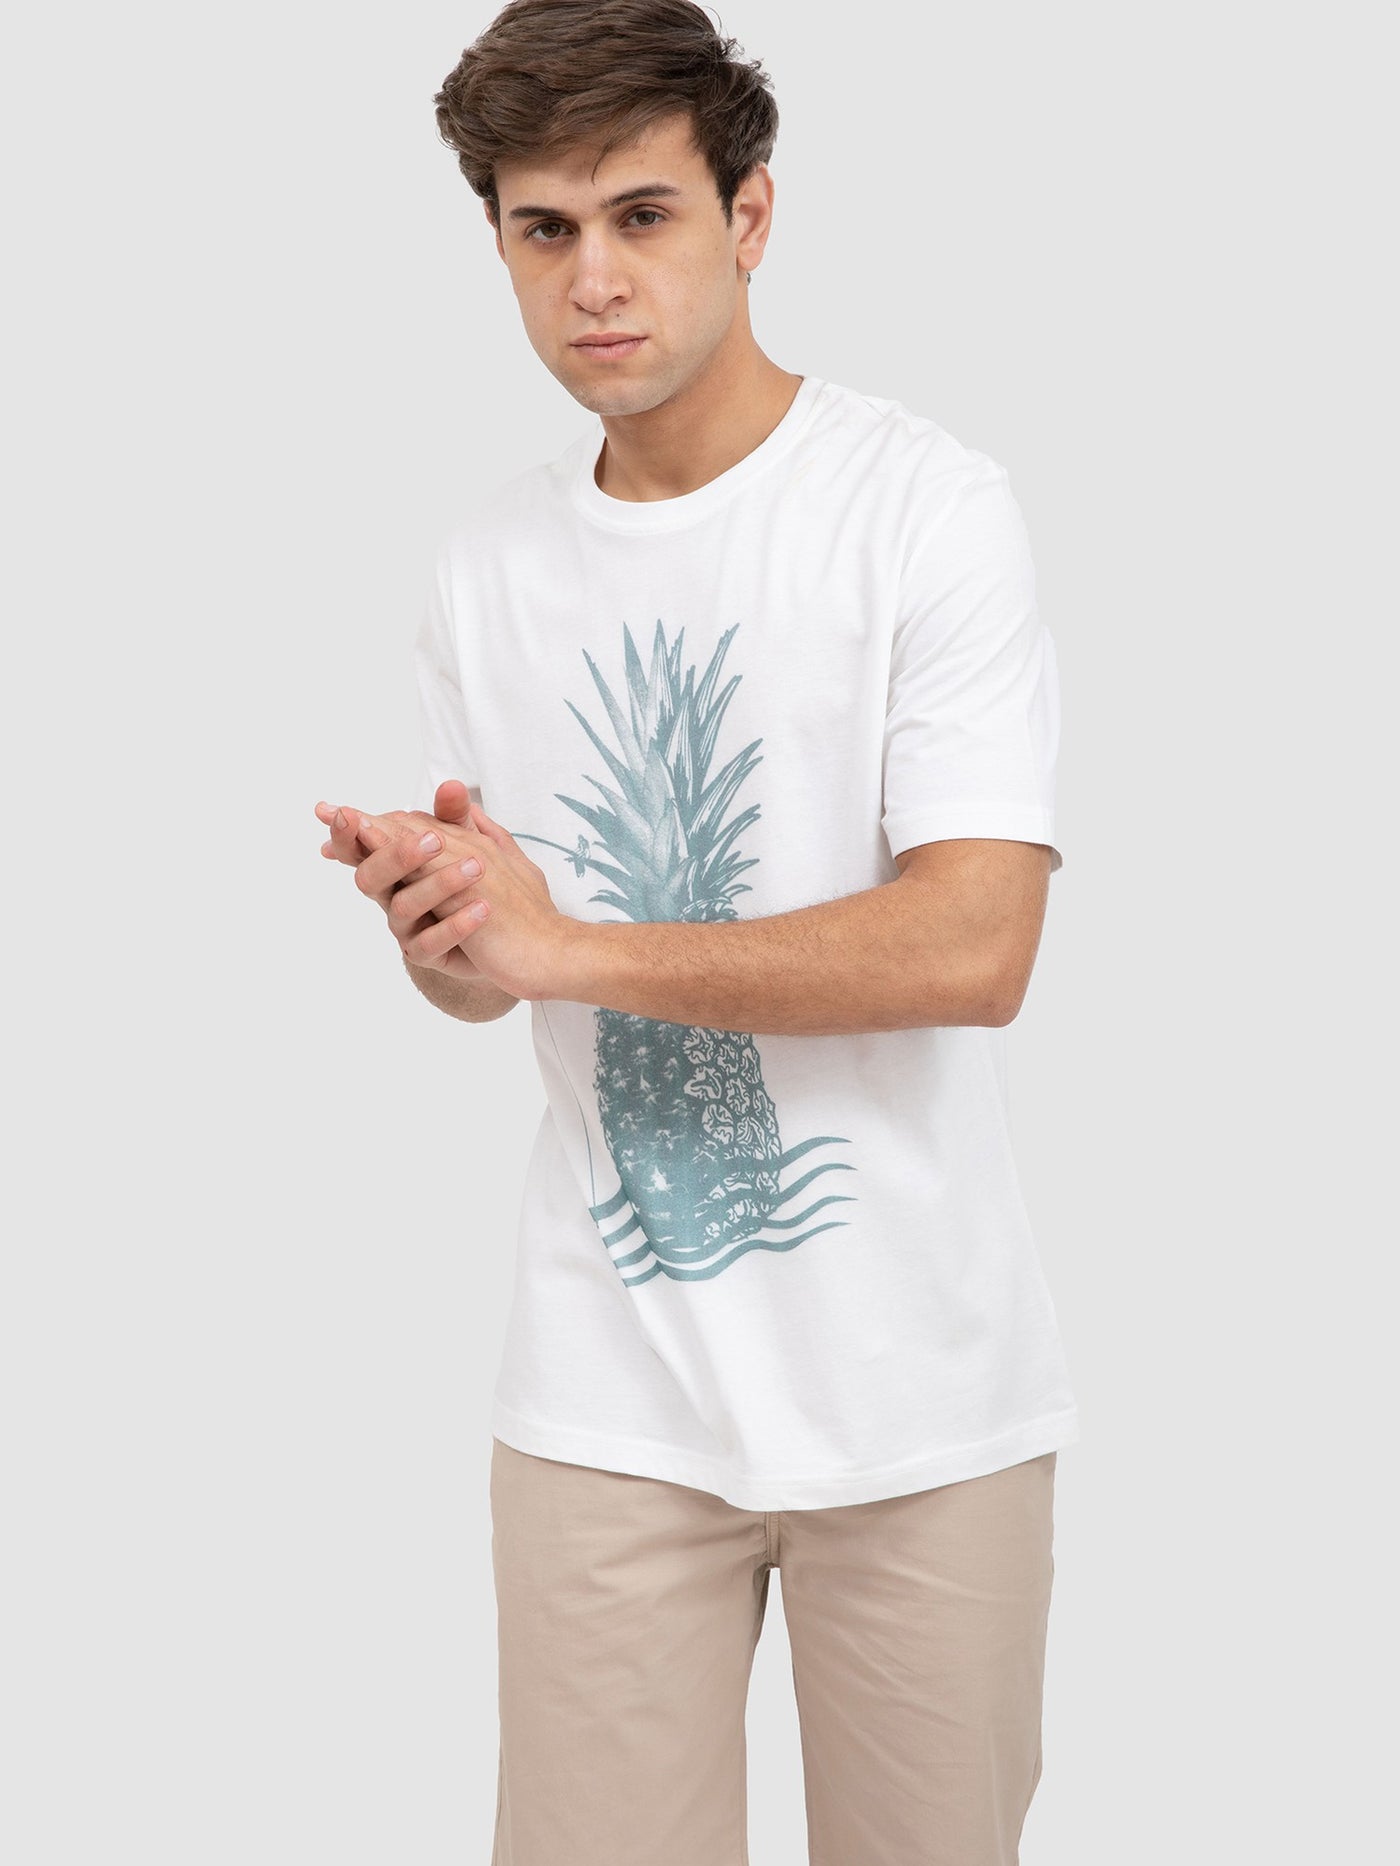 Premoda Mens Pineapple Front Print T-Shirt